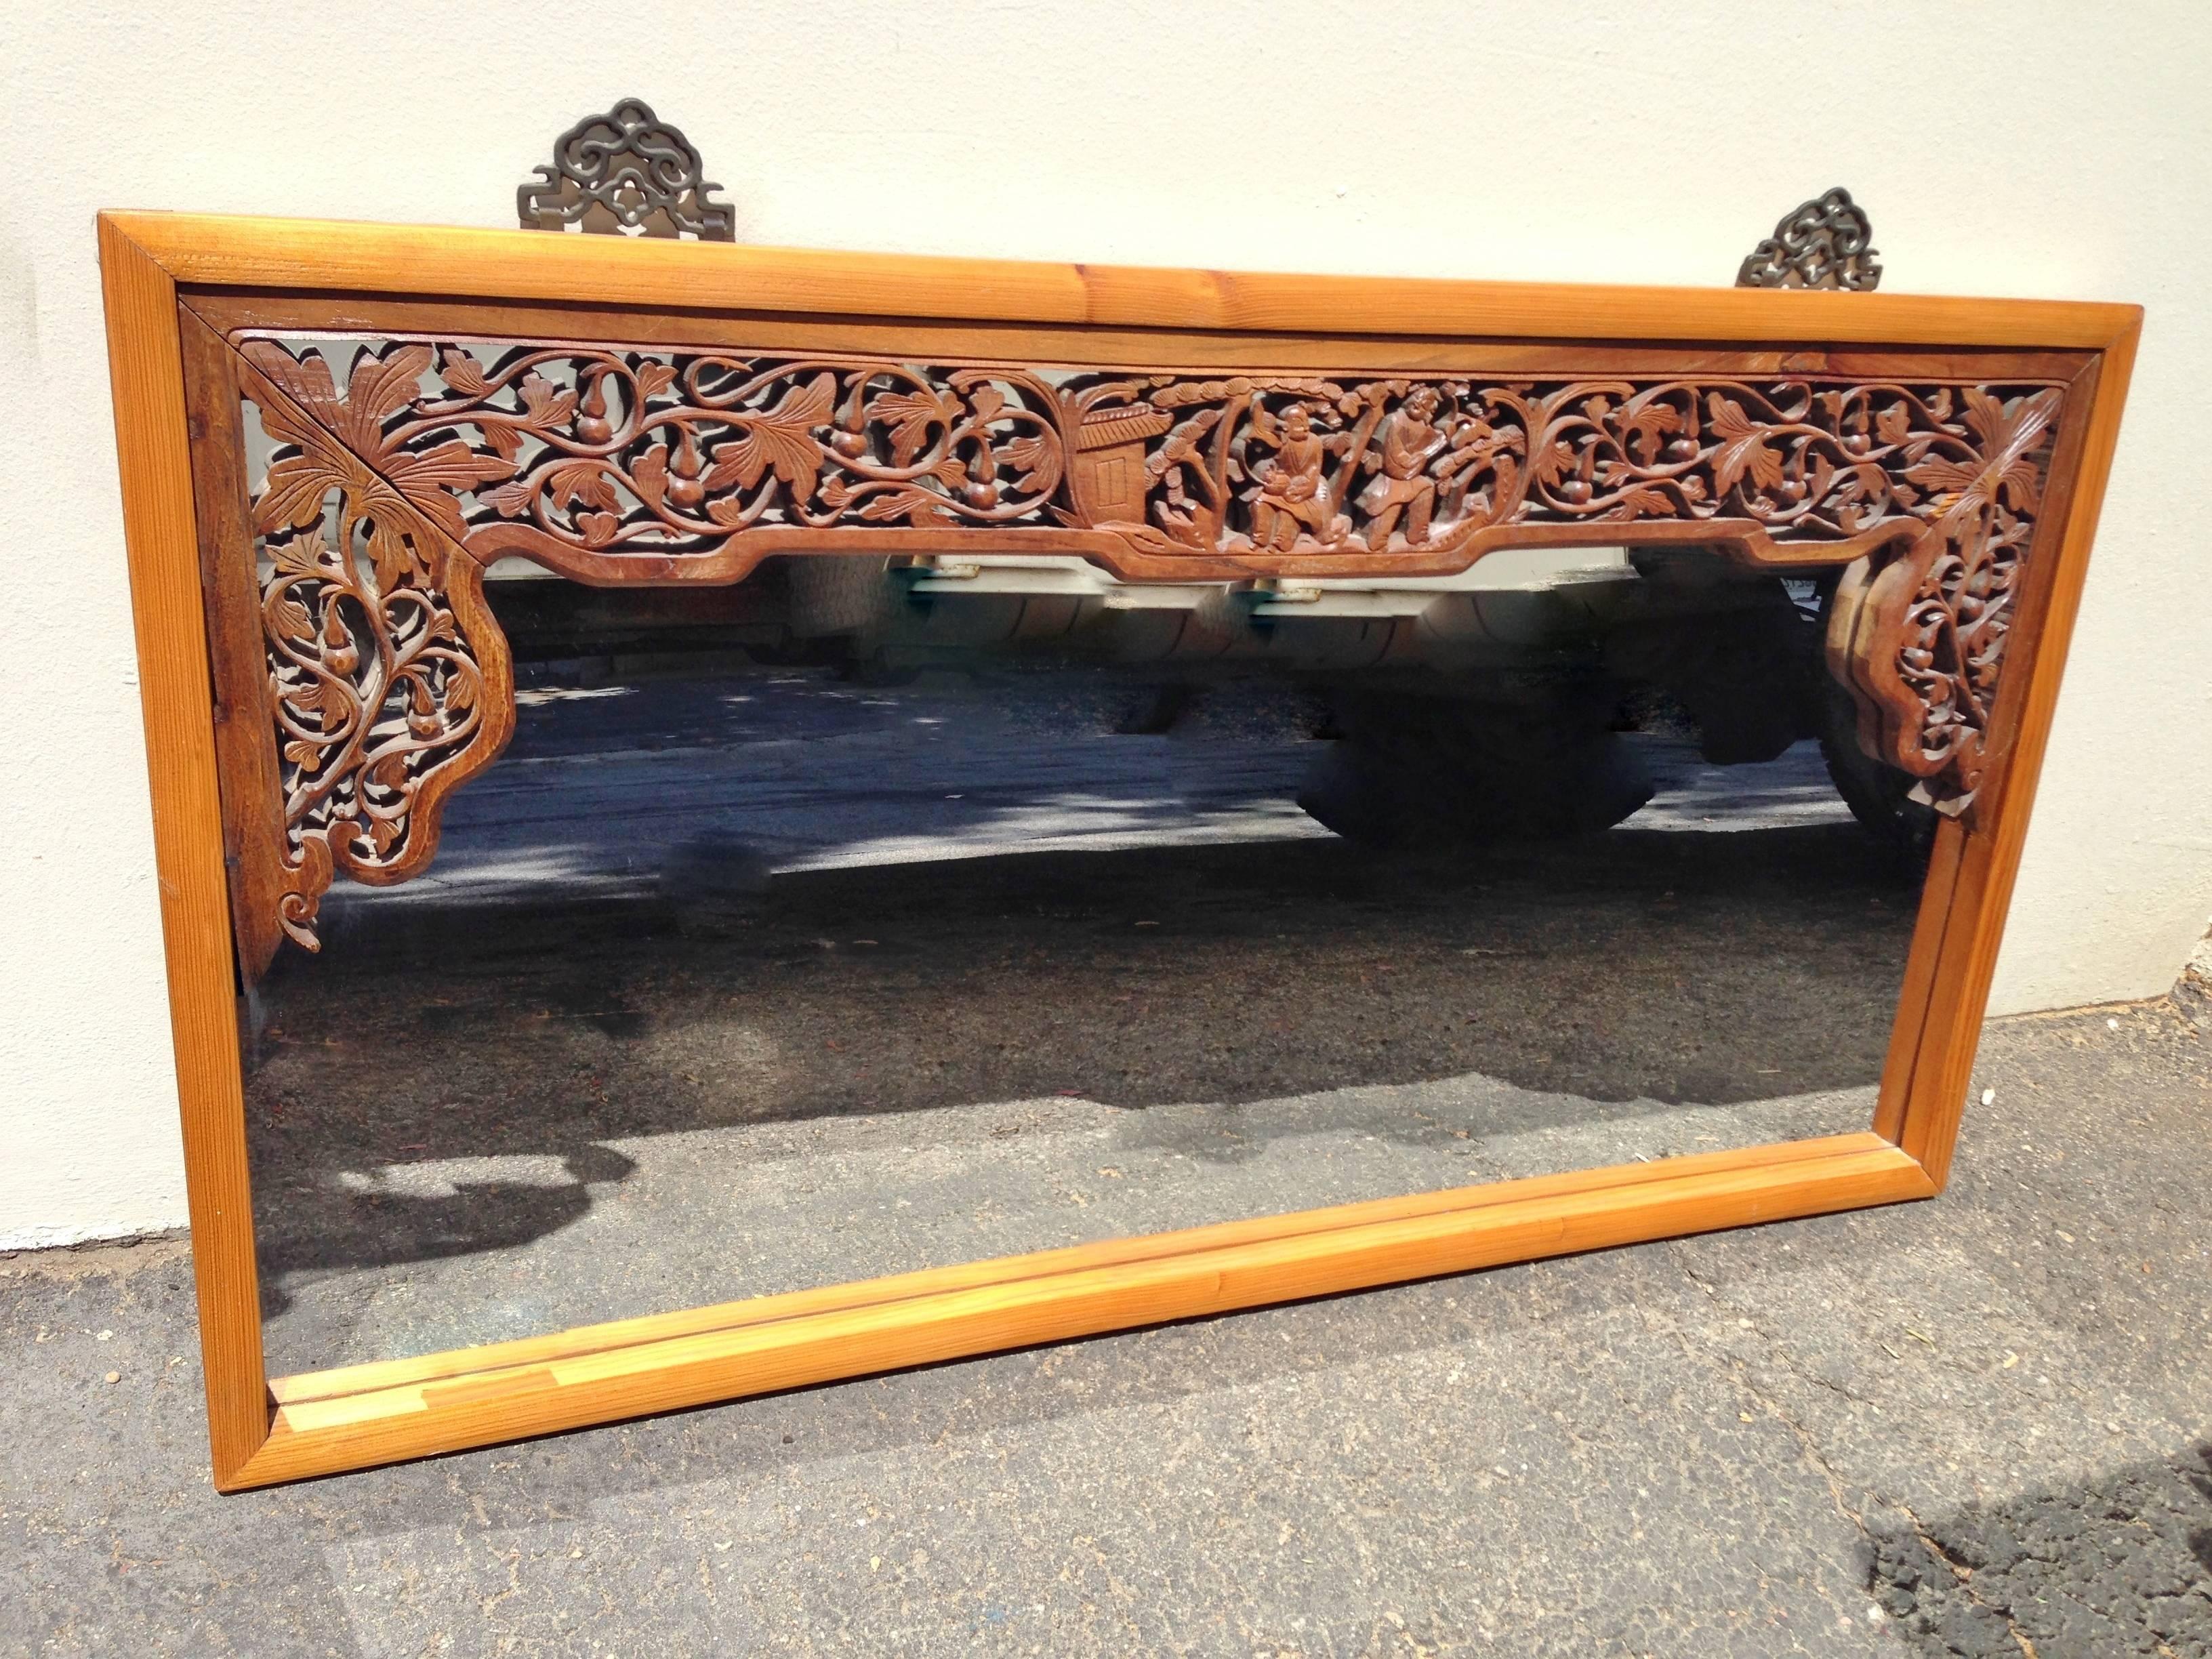 Unser schöner Spiegel ist mit antiken geschnitzten Bildschirm gemacht. Die chinesischen Harmoniegötter 